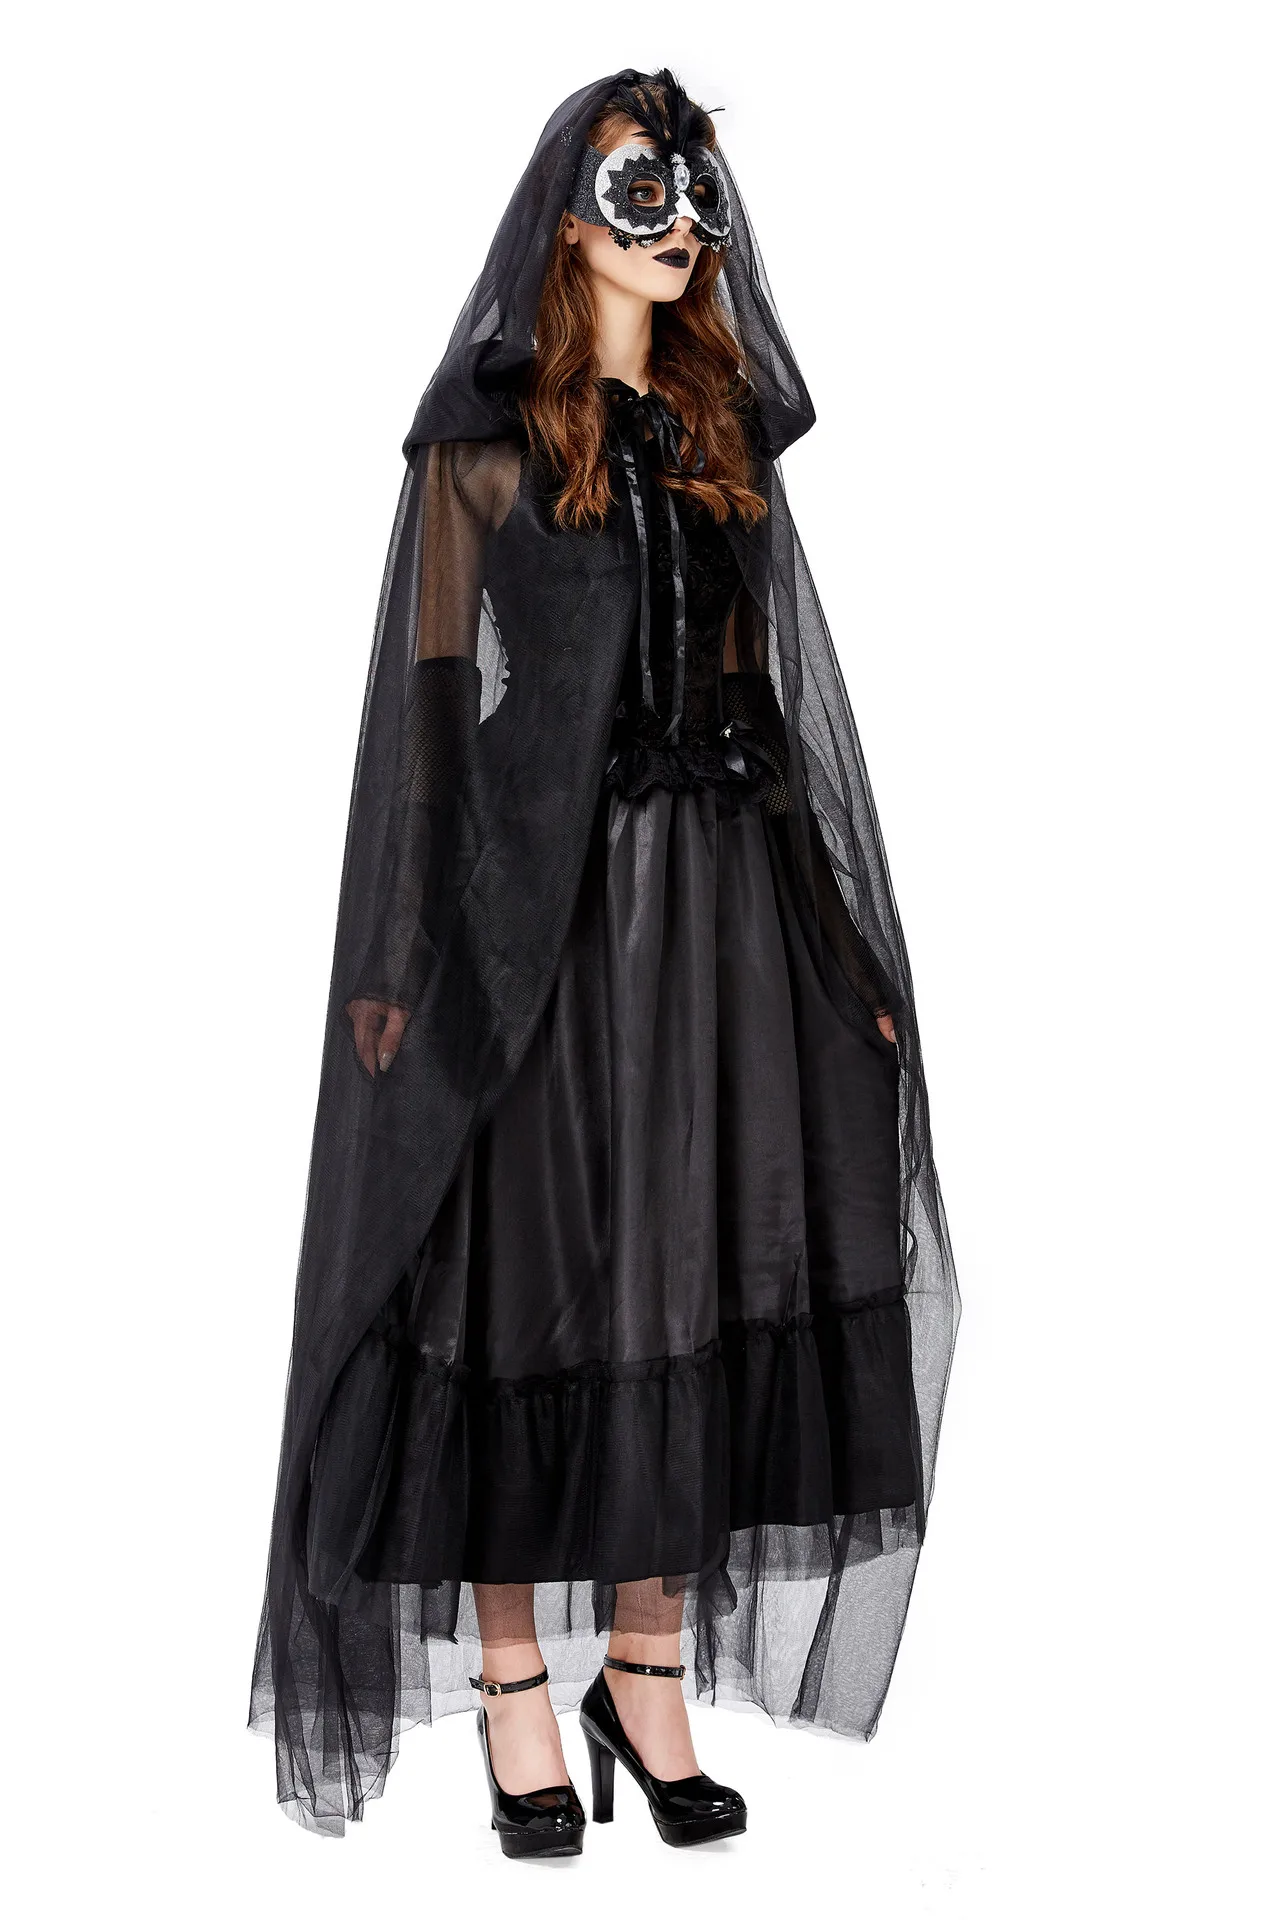 Костюм для косплея дьявол на Хеллоуин, женское платье с привидением невесты, вампира, фэнтези, вечерние платья с террором, женские костюмы для взрослых